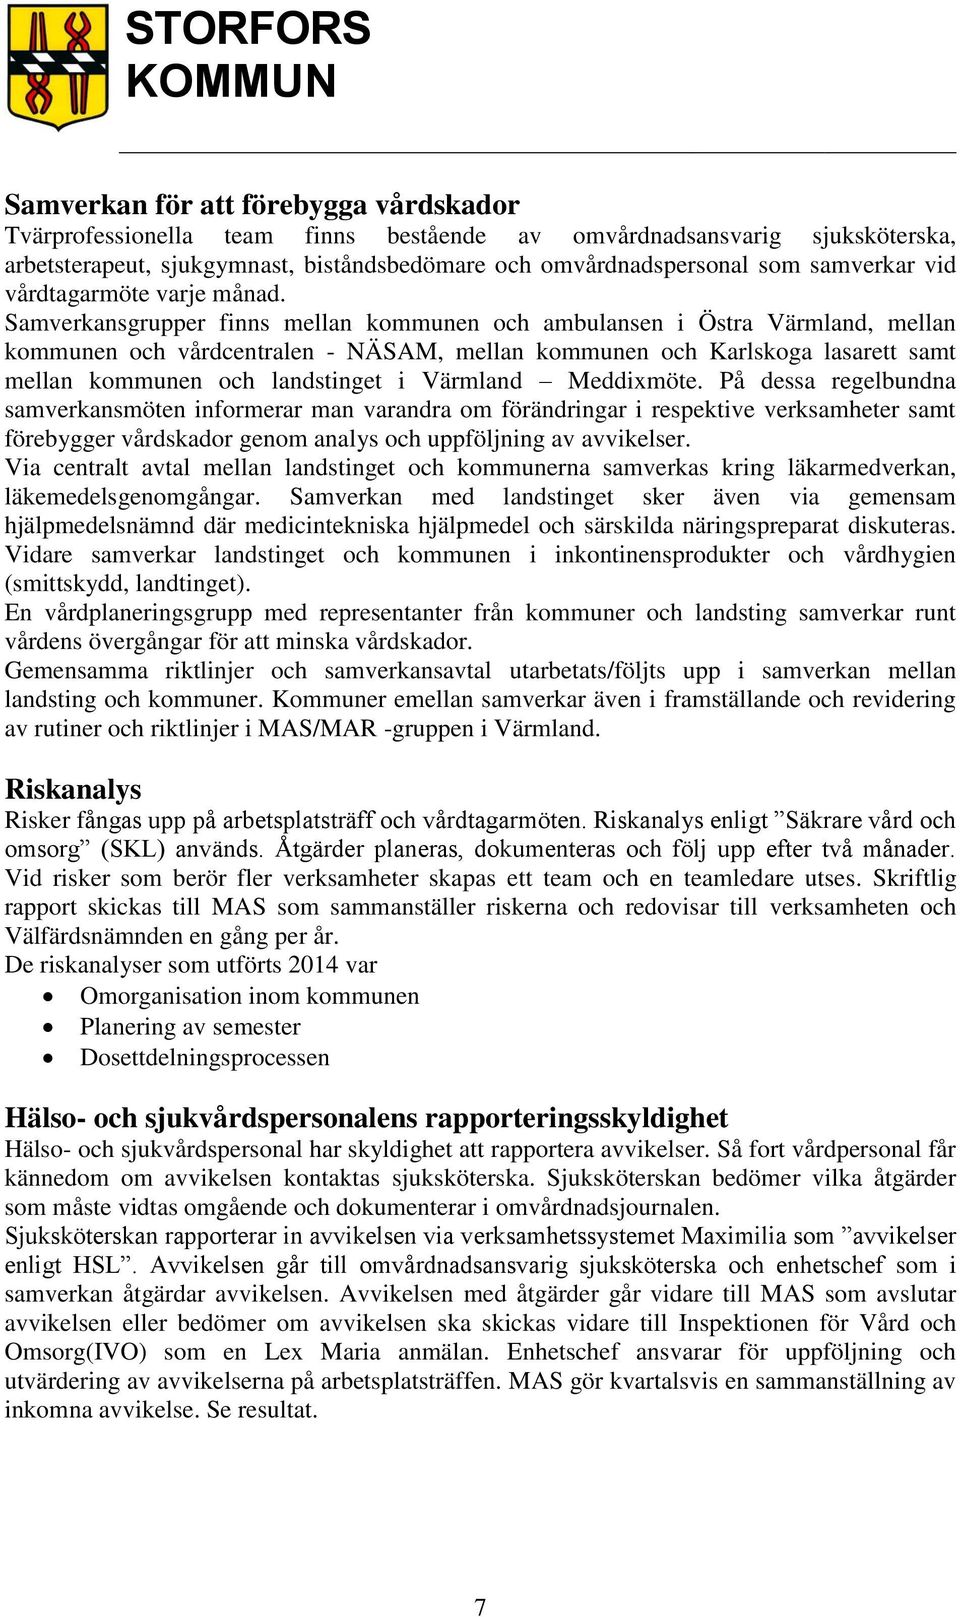 Samverkansgrupper finns mellan kommunen och ambulansen i Östra Värmland, mellan kommunen och vårdcentralen - NÄSAM, mellan kommunen och Karlskoga lasarett samt mellan kommunen och landstinget i